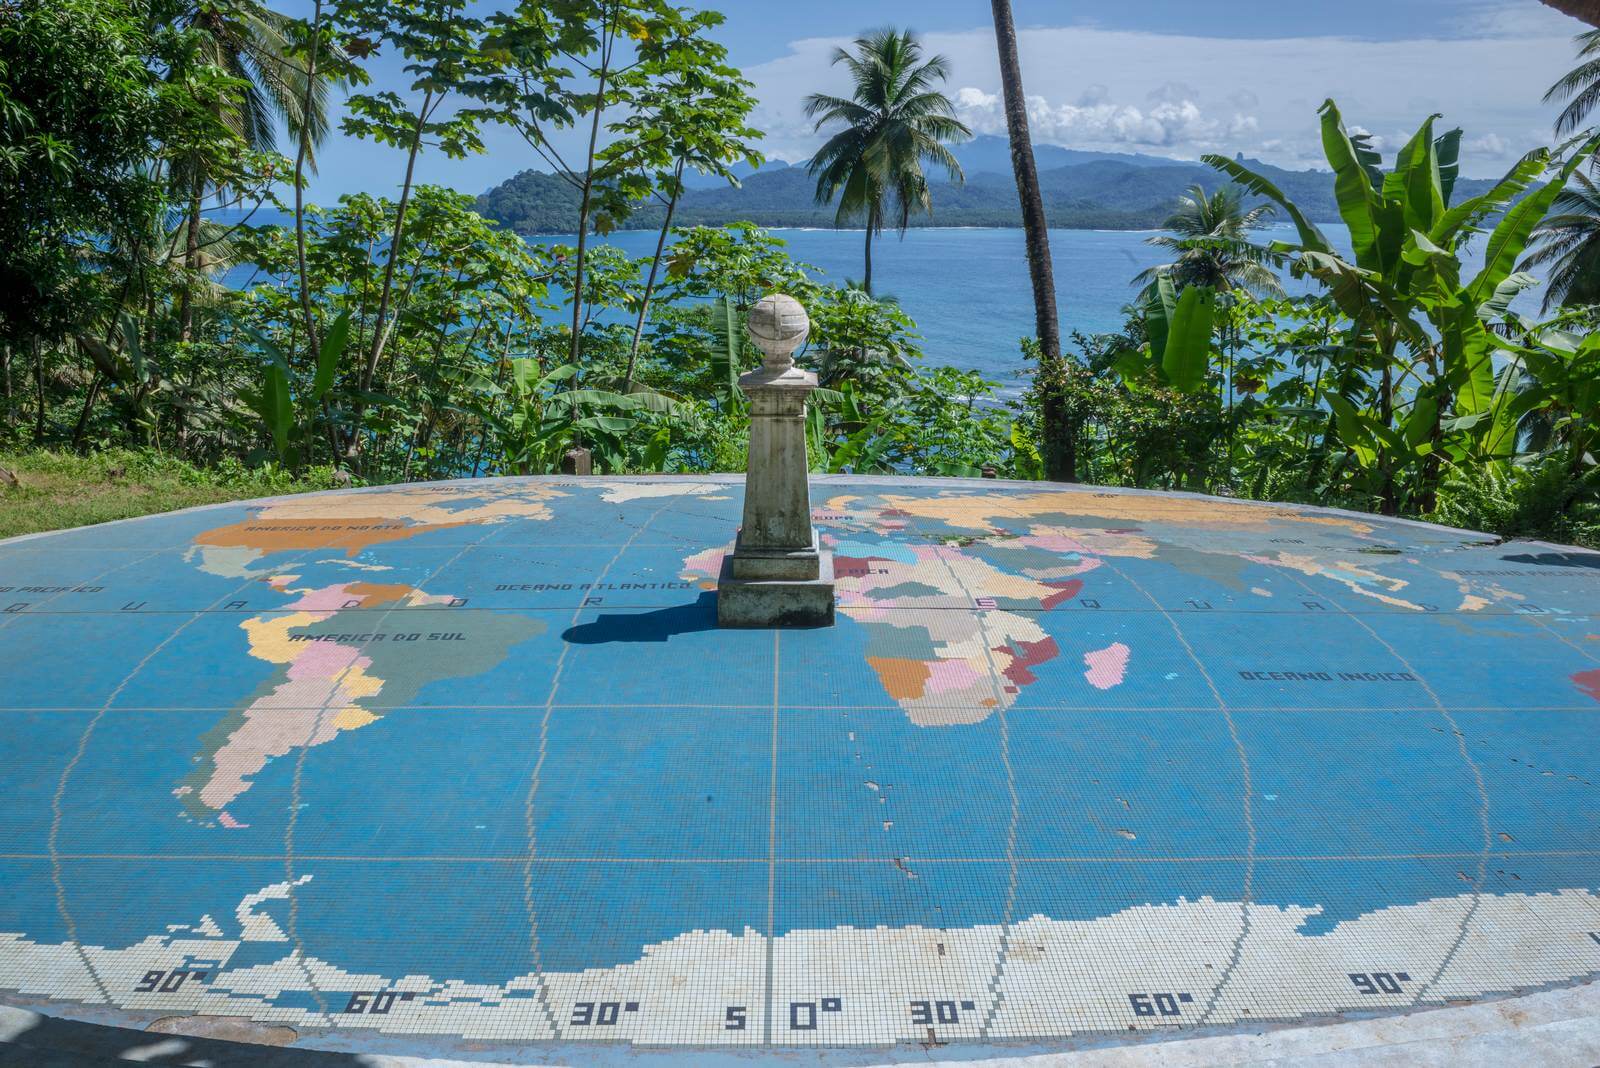 Foto: Die quator-Linie auf dem Inselchen Rolas vor Sao Tome - Bildrechte Matthias Graben - Lupe Reisen